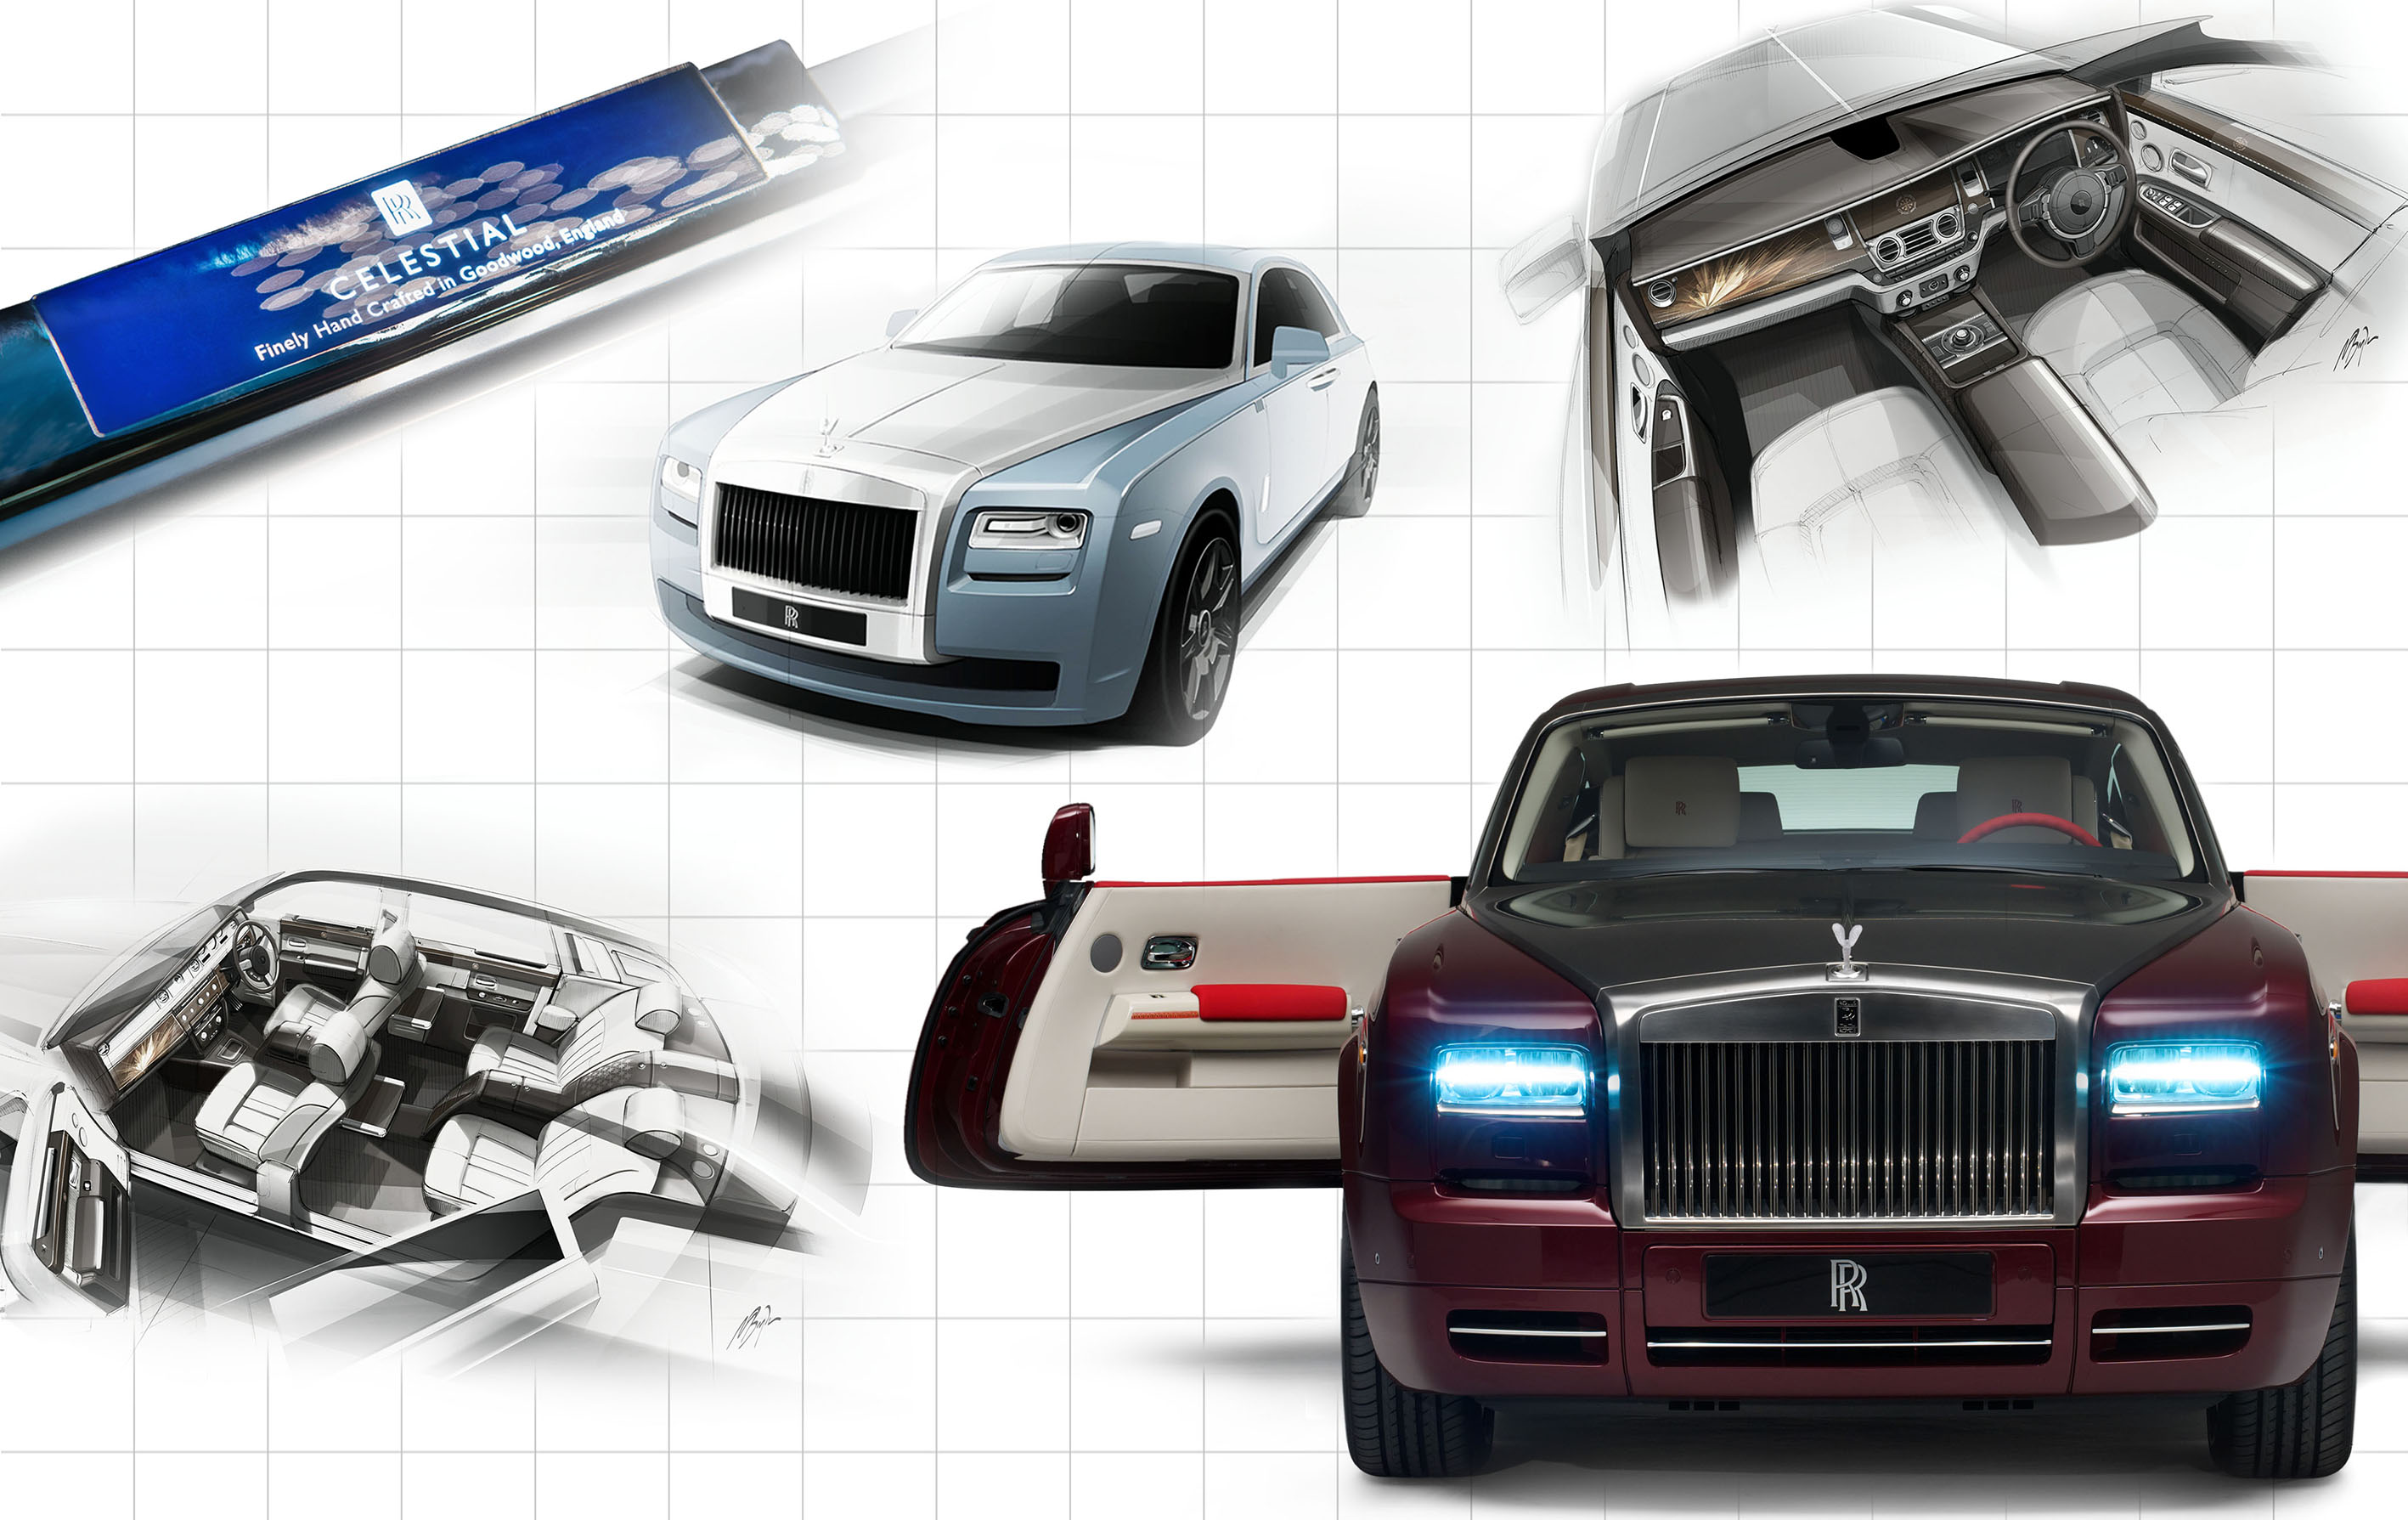 Rolls Royce Bespoke